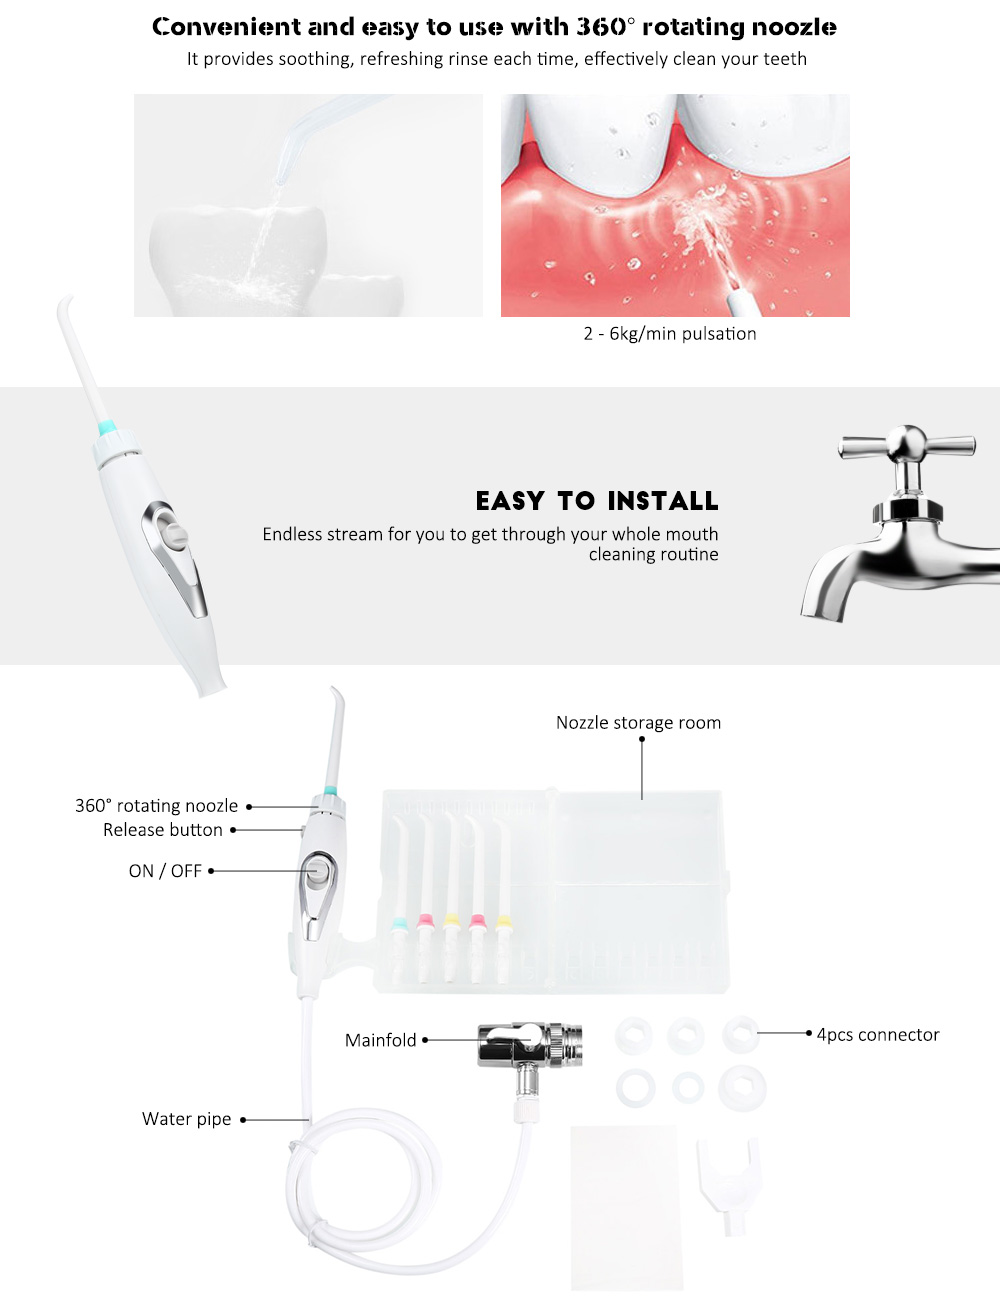 Dental Flosser Water Jet Oral Care Teeth Cleaner Irrigator Series